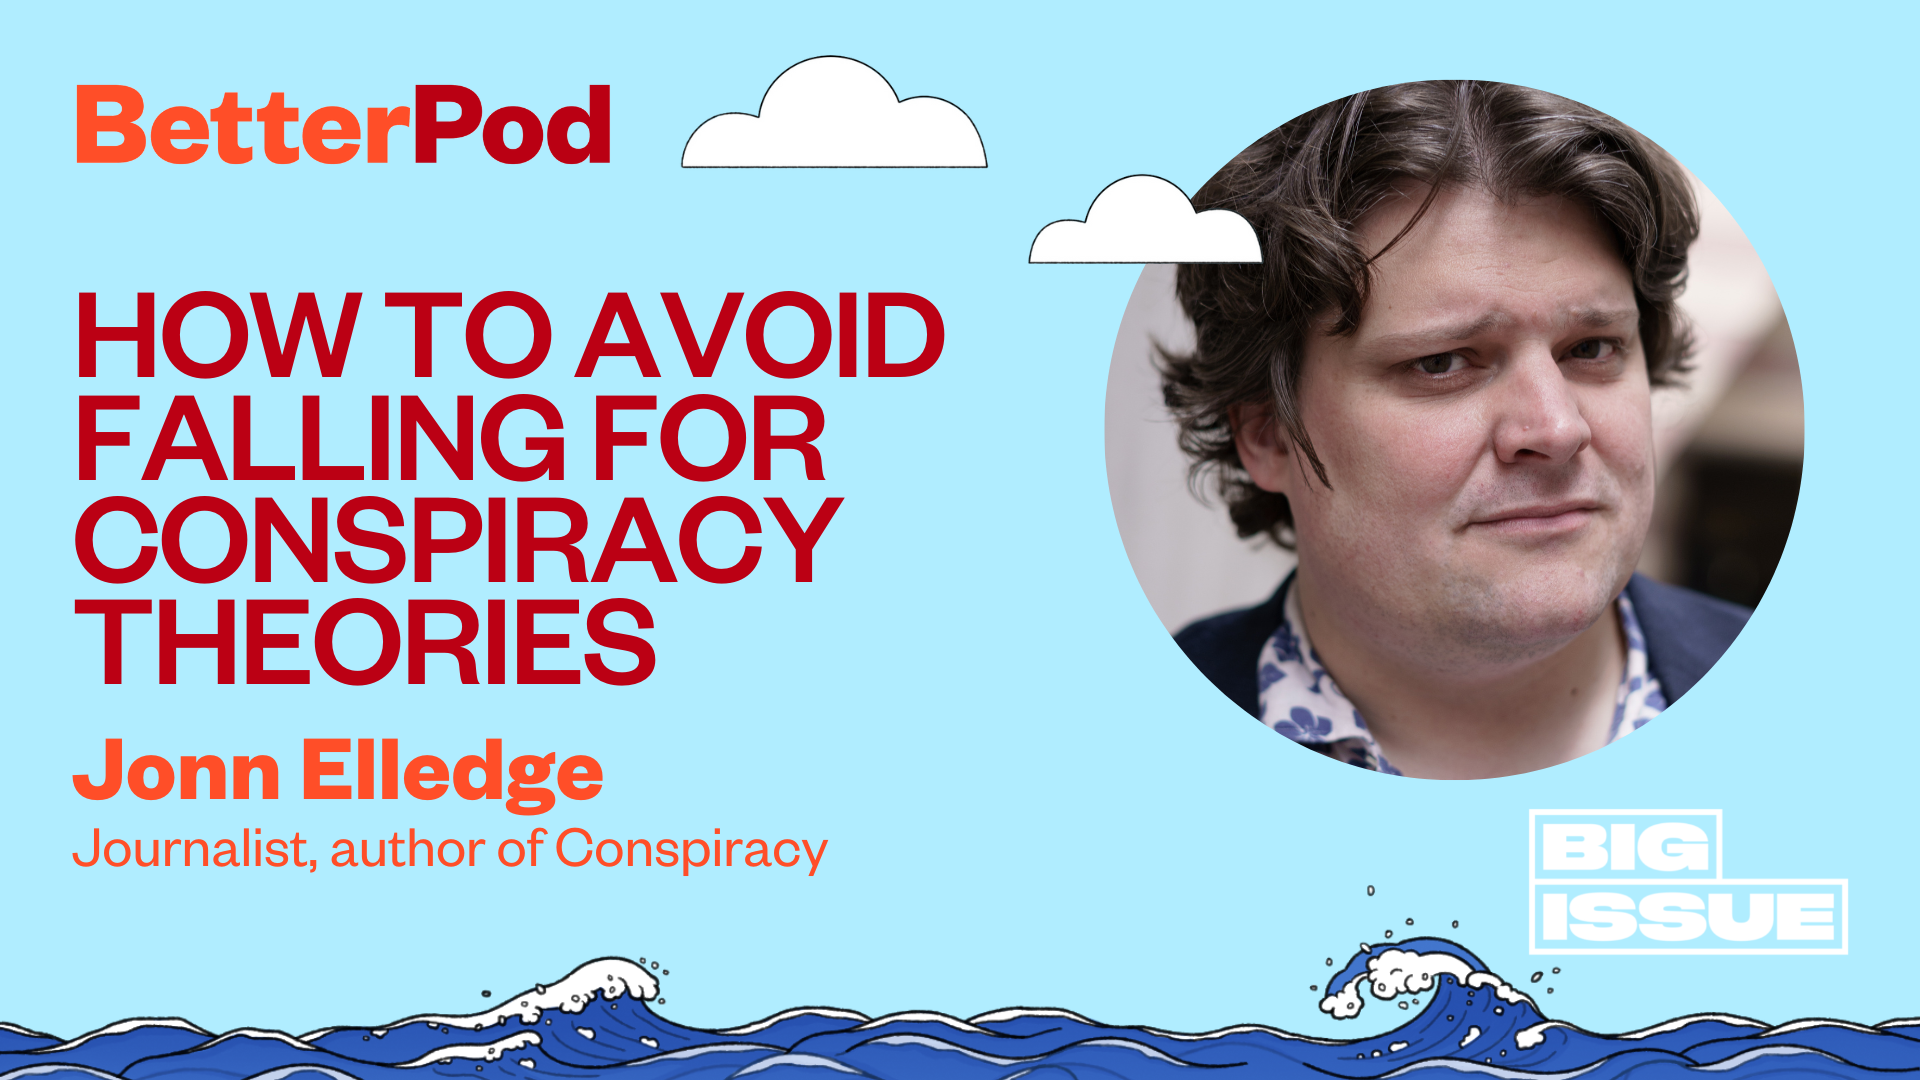 Jonn Elledge tells BetterPod about conspiracy theories